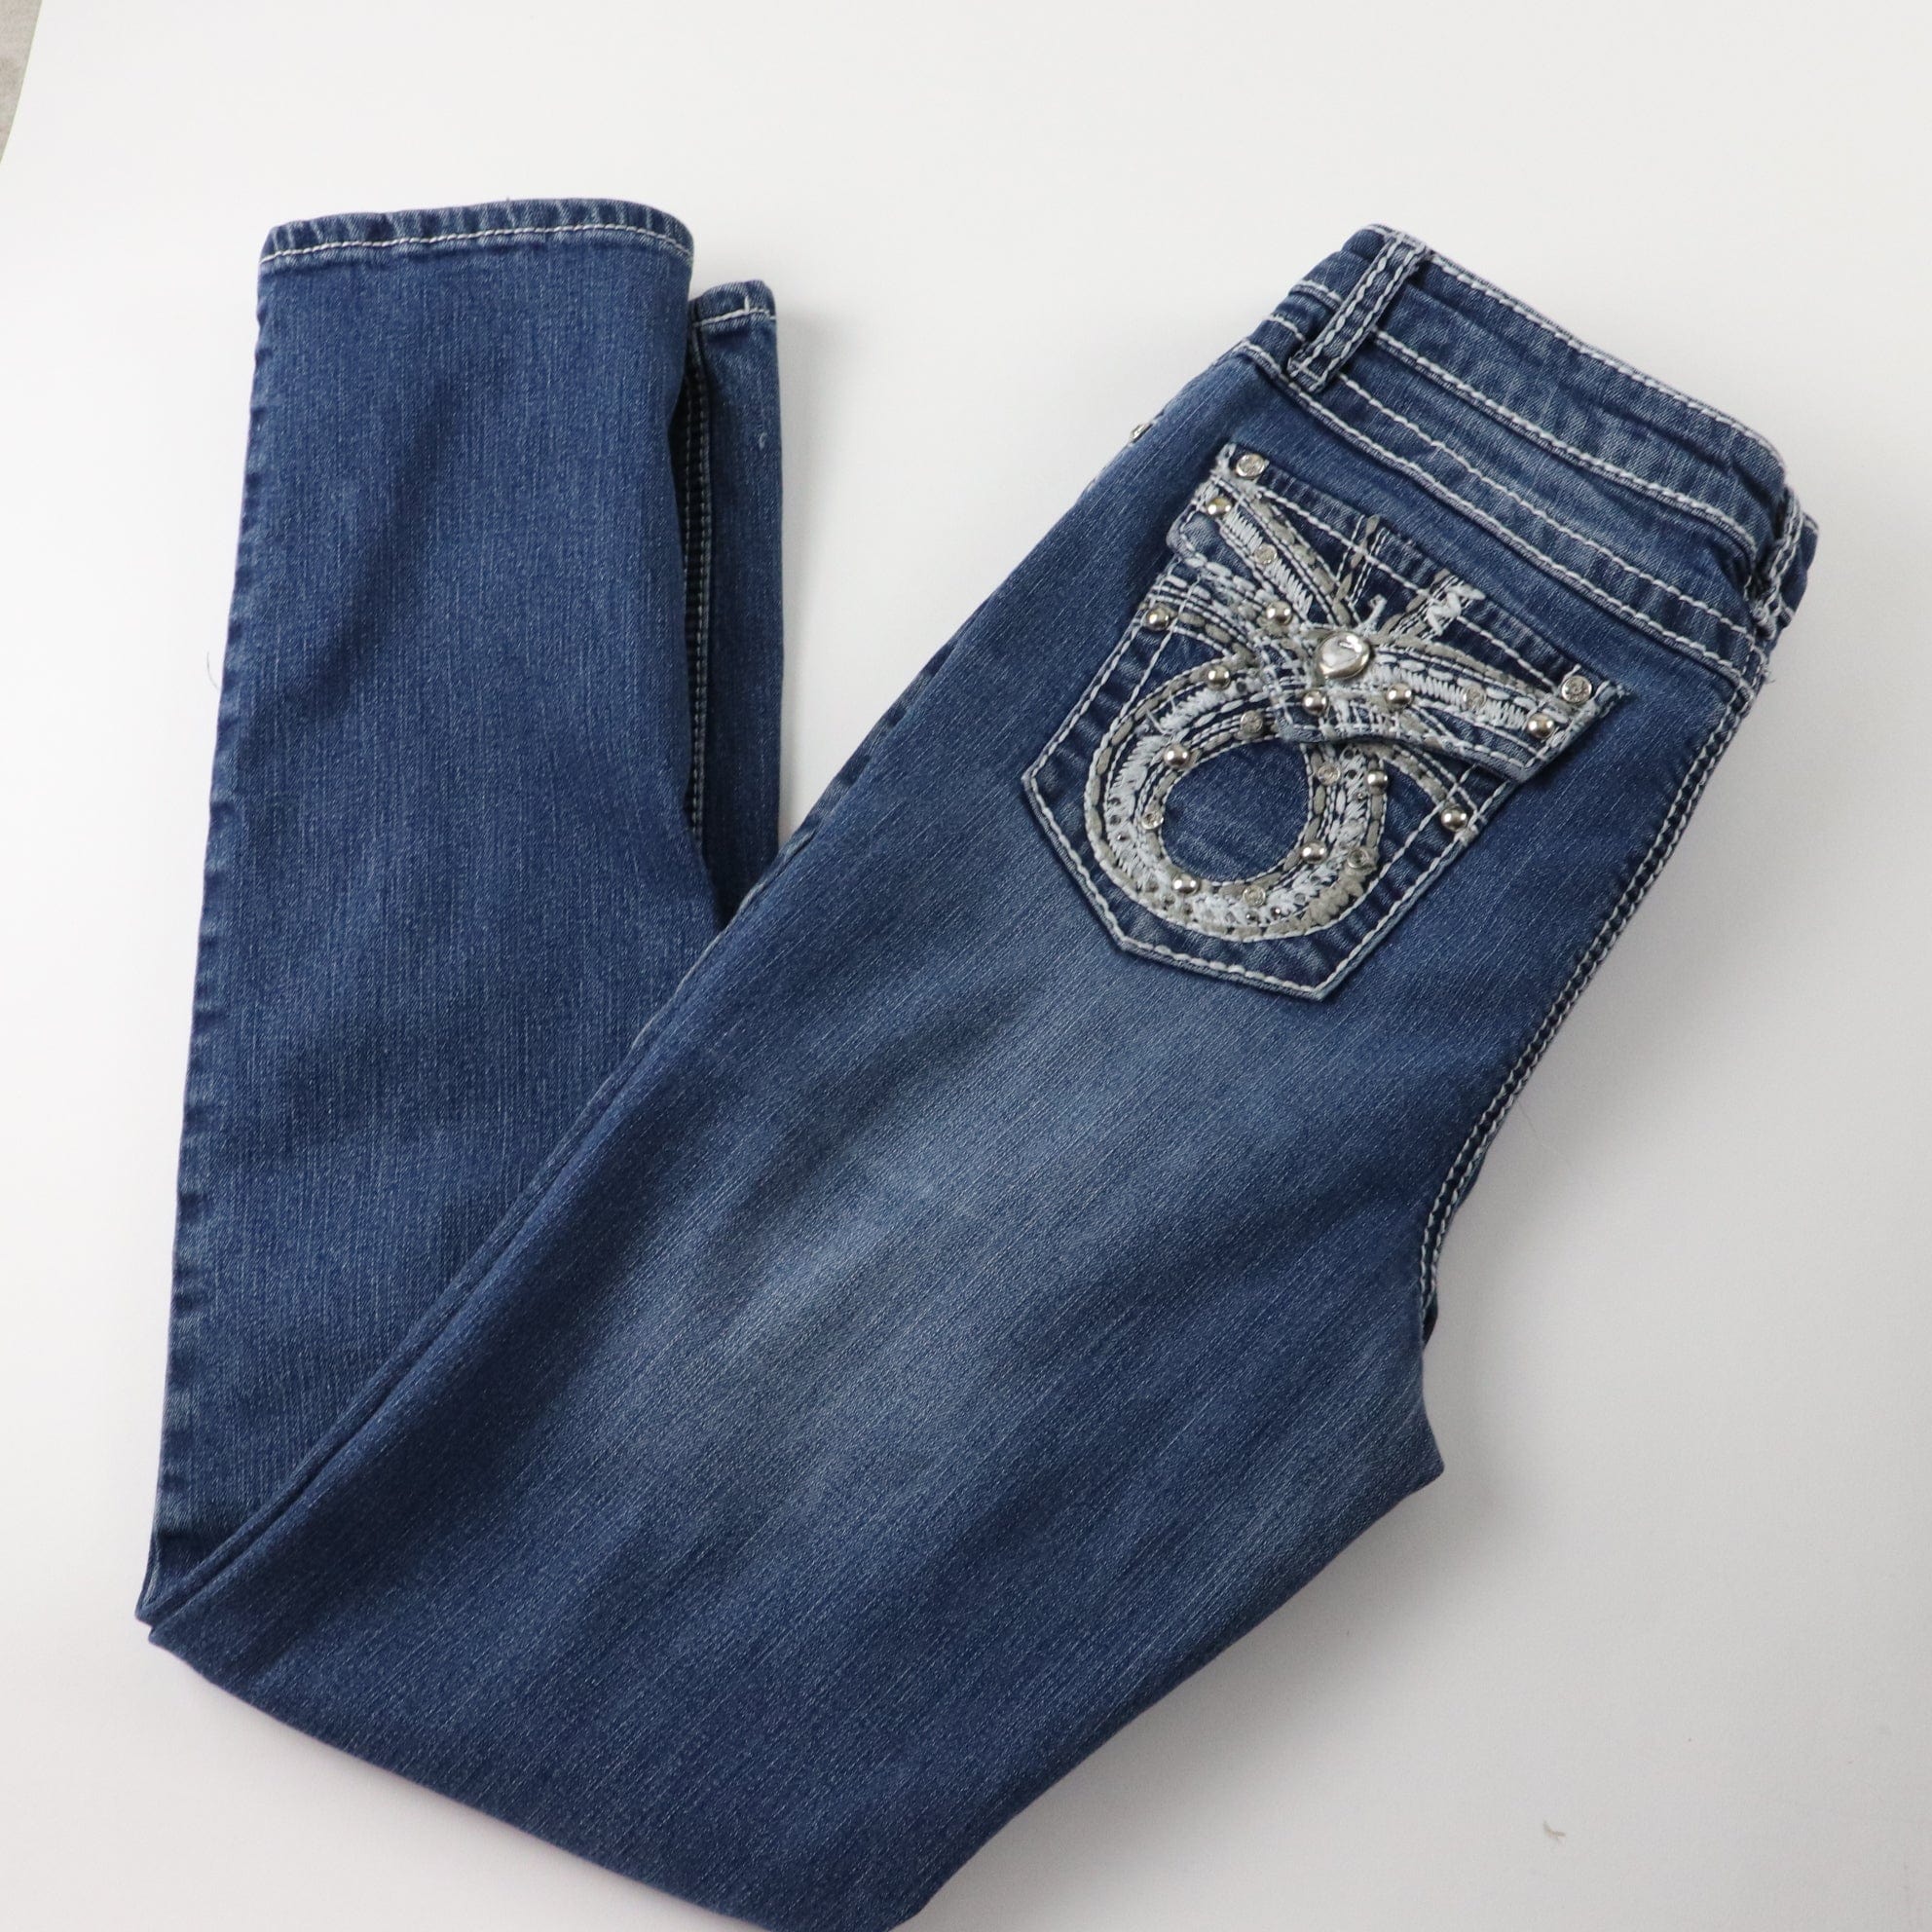 Earl Jeans Barely Boot Women's Blue denim Size - Depop